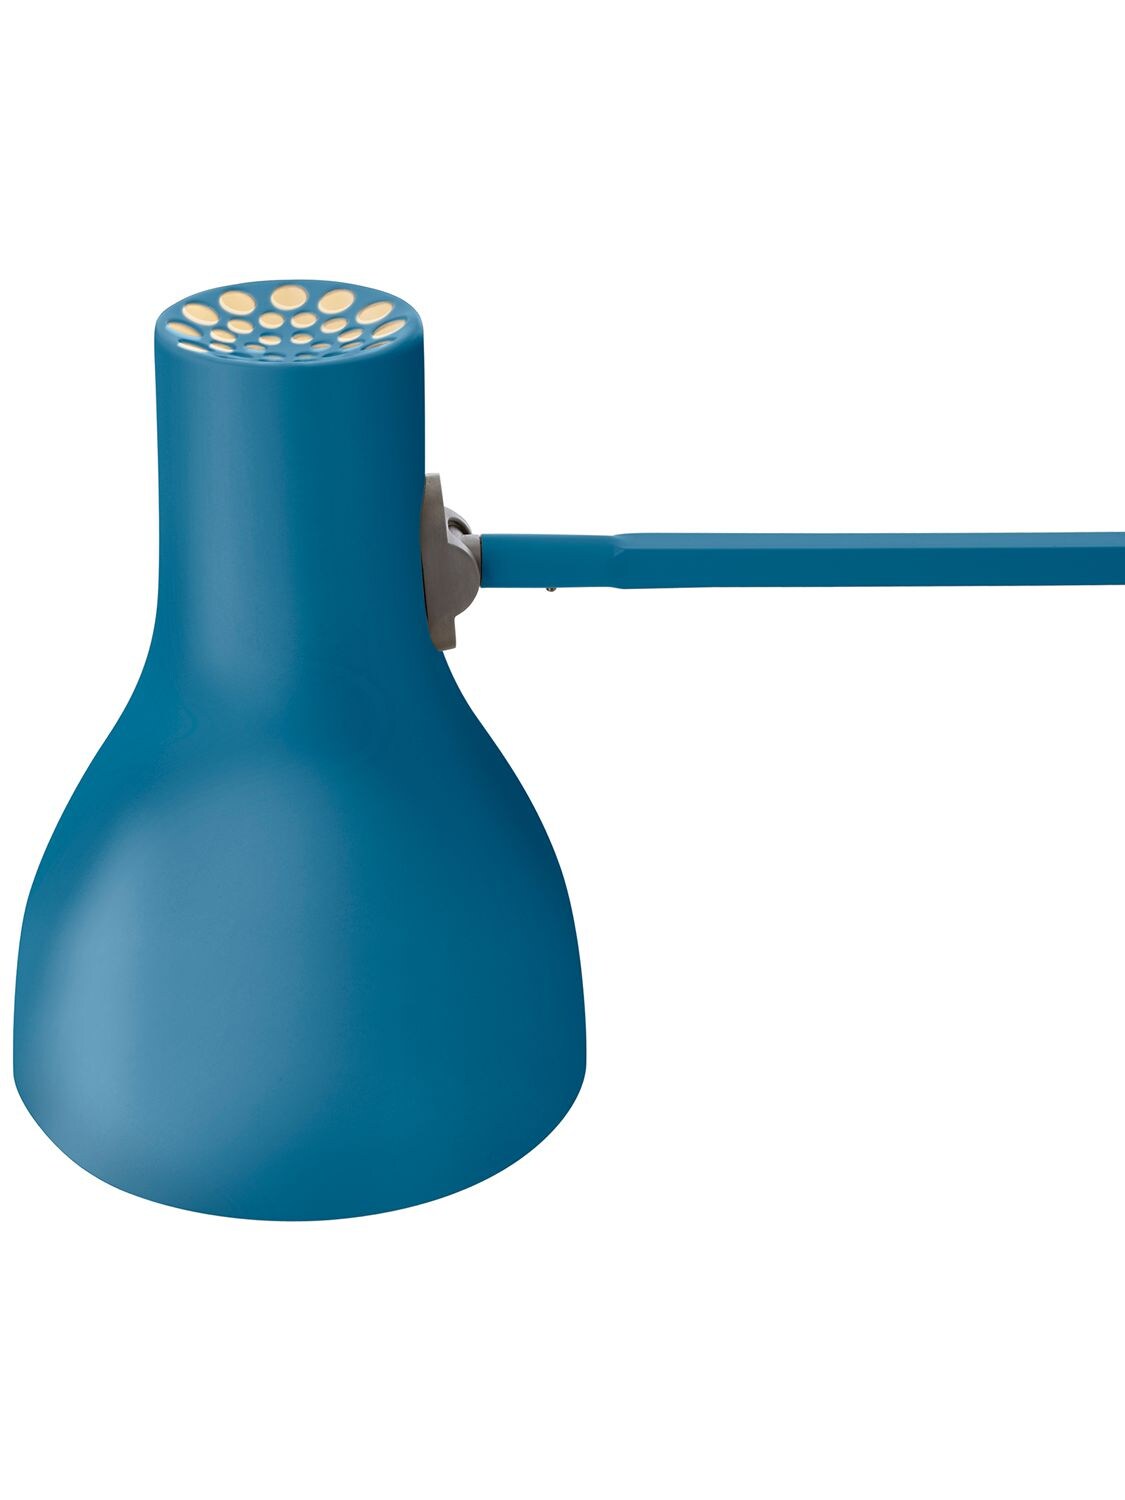 Shop Anglepoise Margaret Howell Type 75 Desk Lamp In Blue